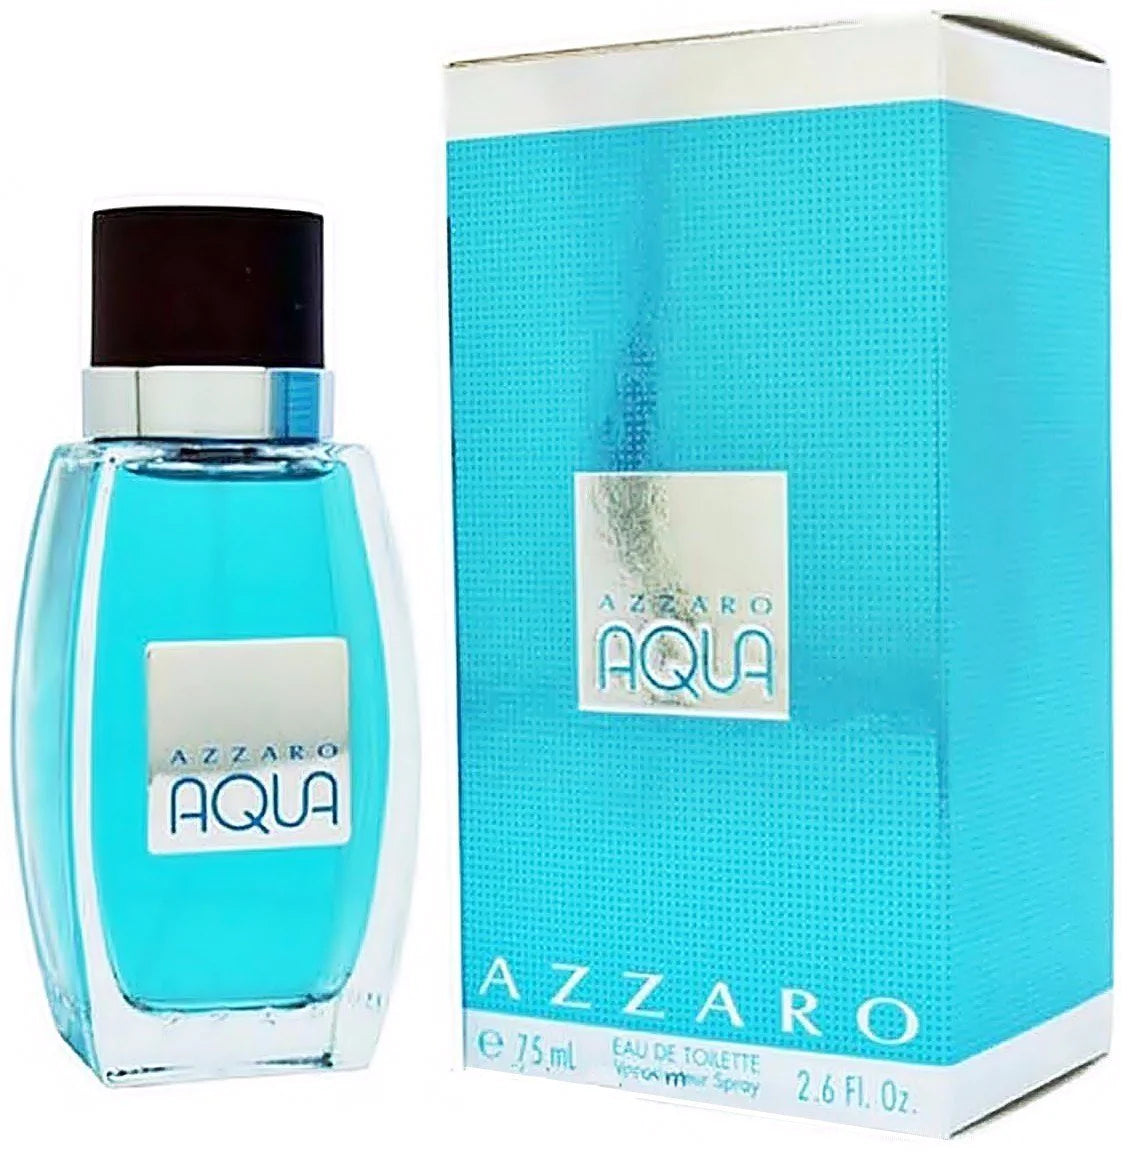 Azzaro Aqua by Azzaro for Men - 2.6 oz EDT Spray